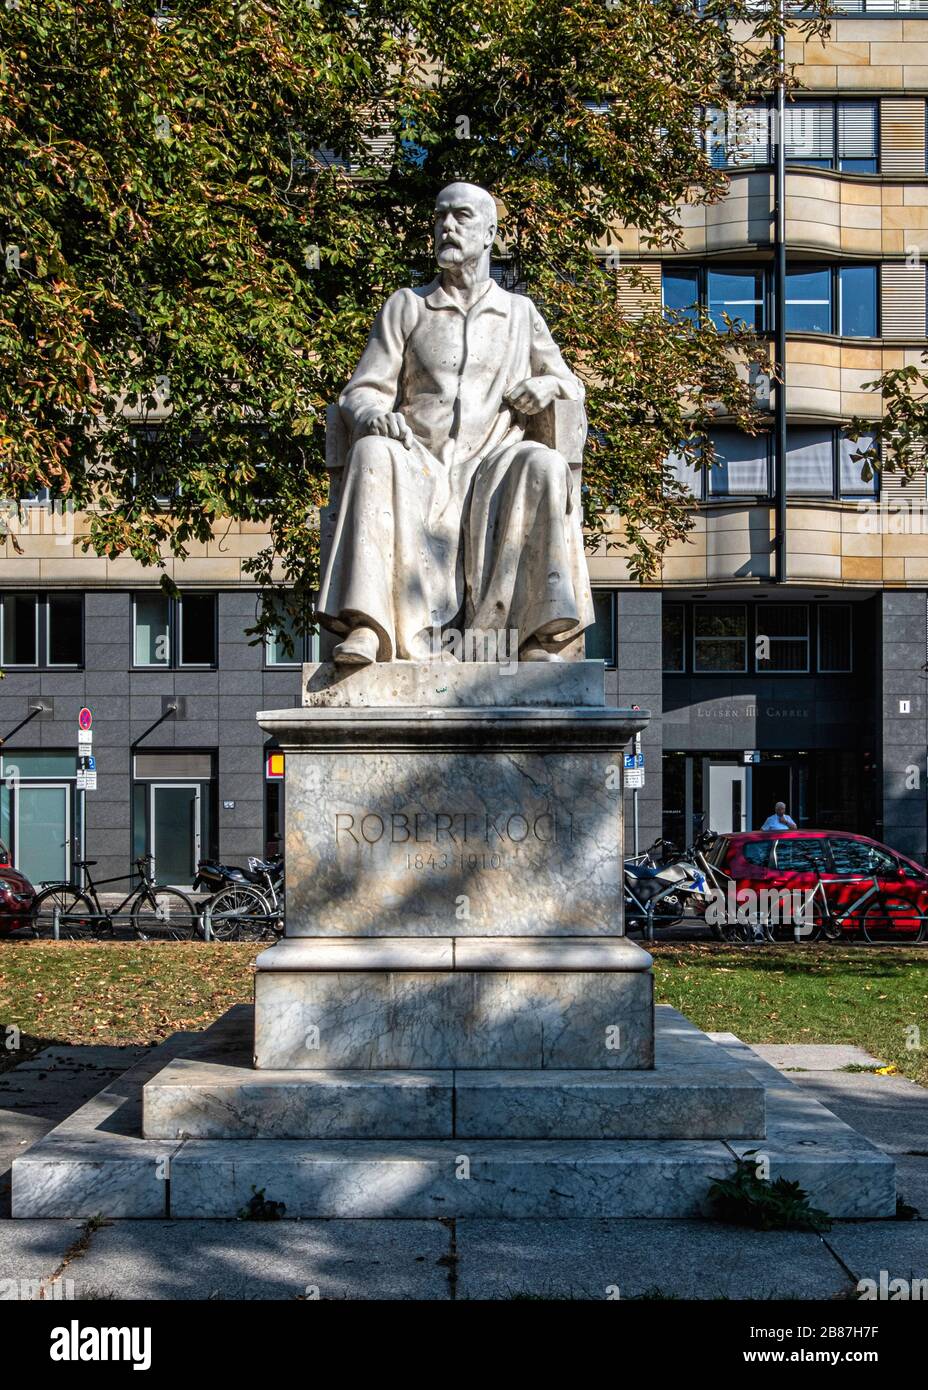 Statue de Robert Koch Microbiologiste allemand, qui a identifié la cause de la tuberculose, de l'anthrax et du choléra près de l'hôpital Charite, Mitte, Berlin Banque D'Images